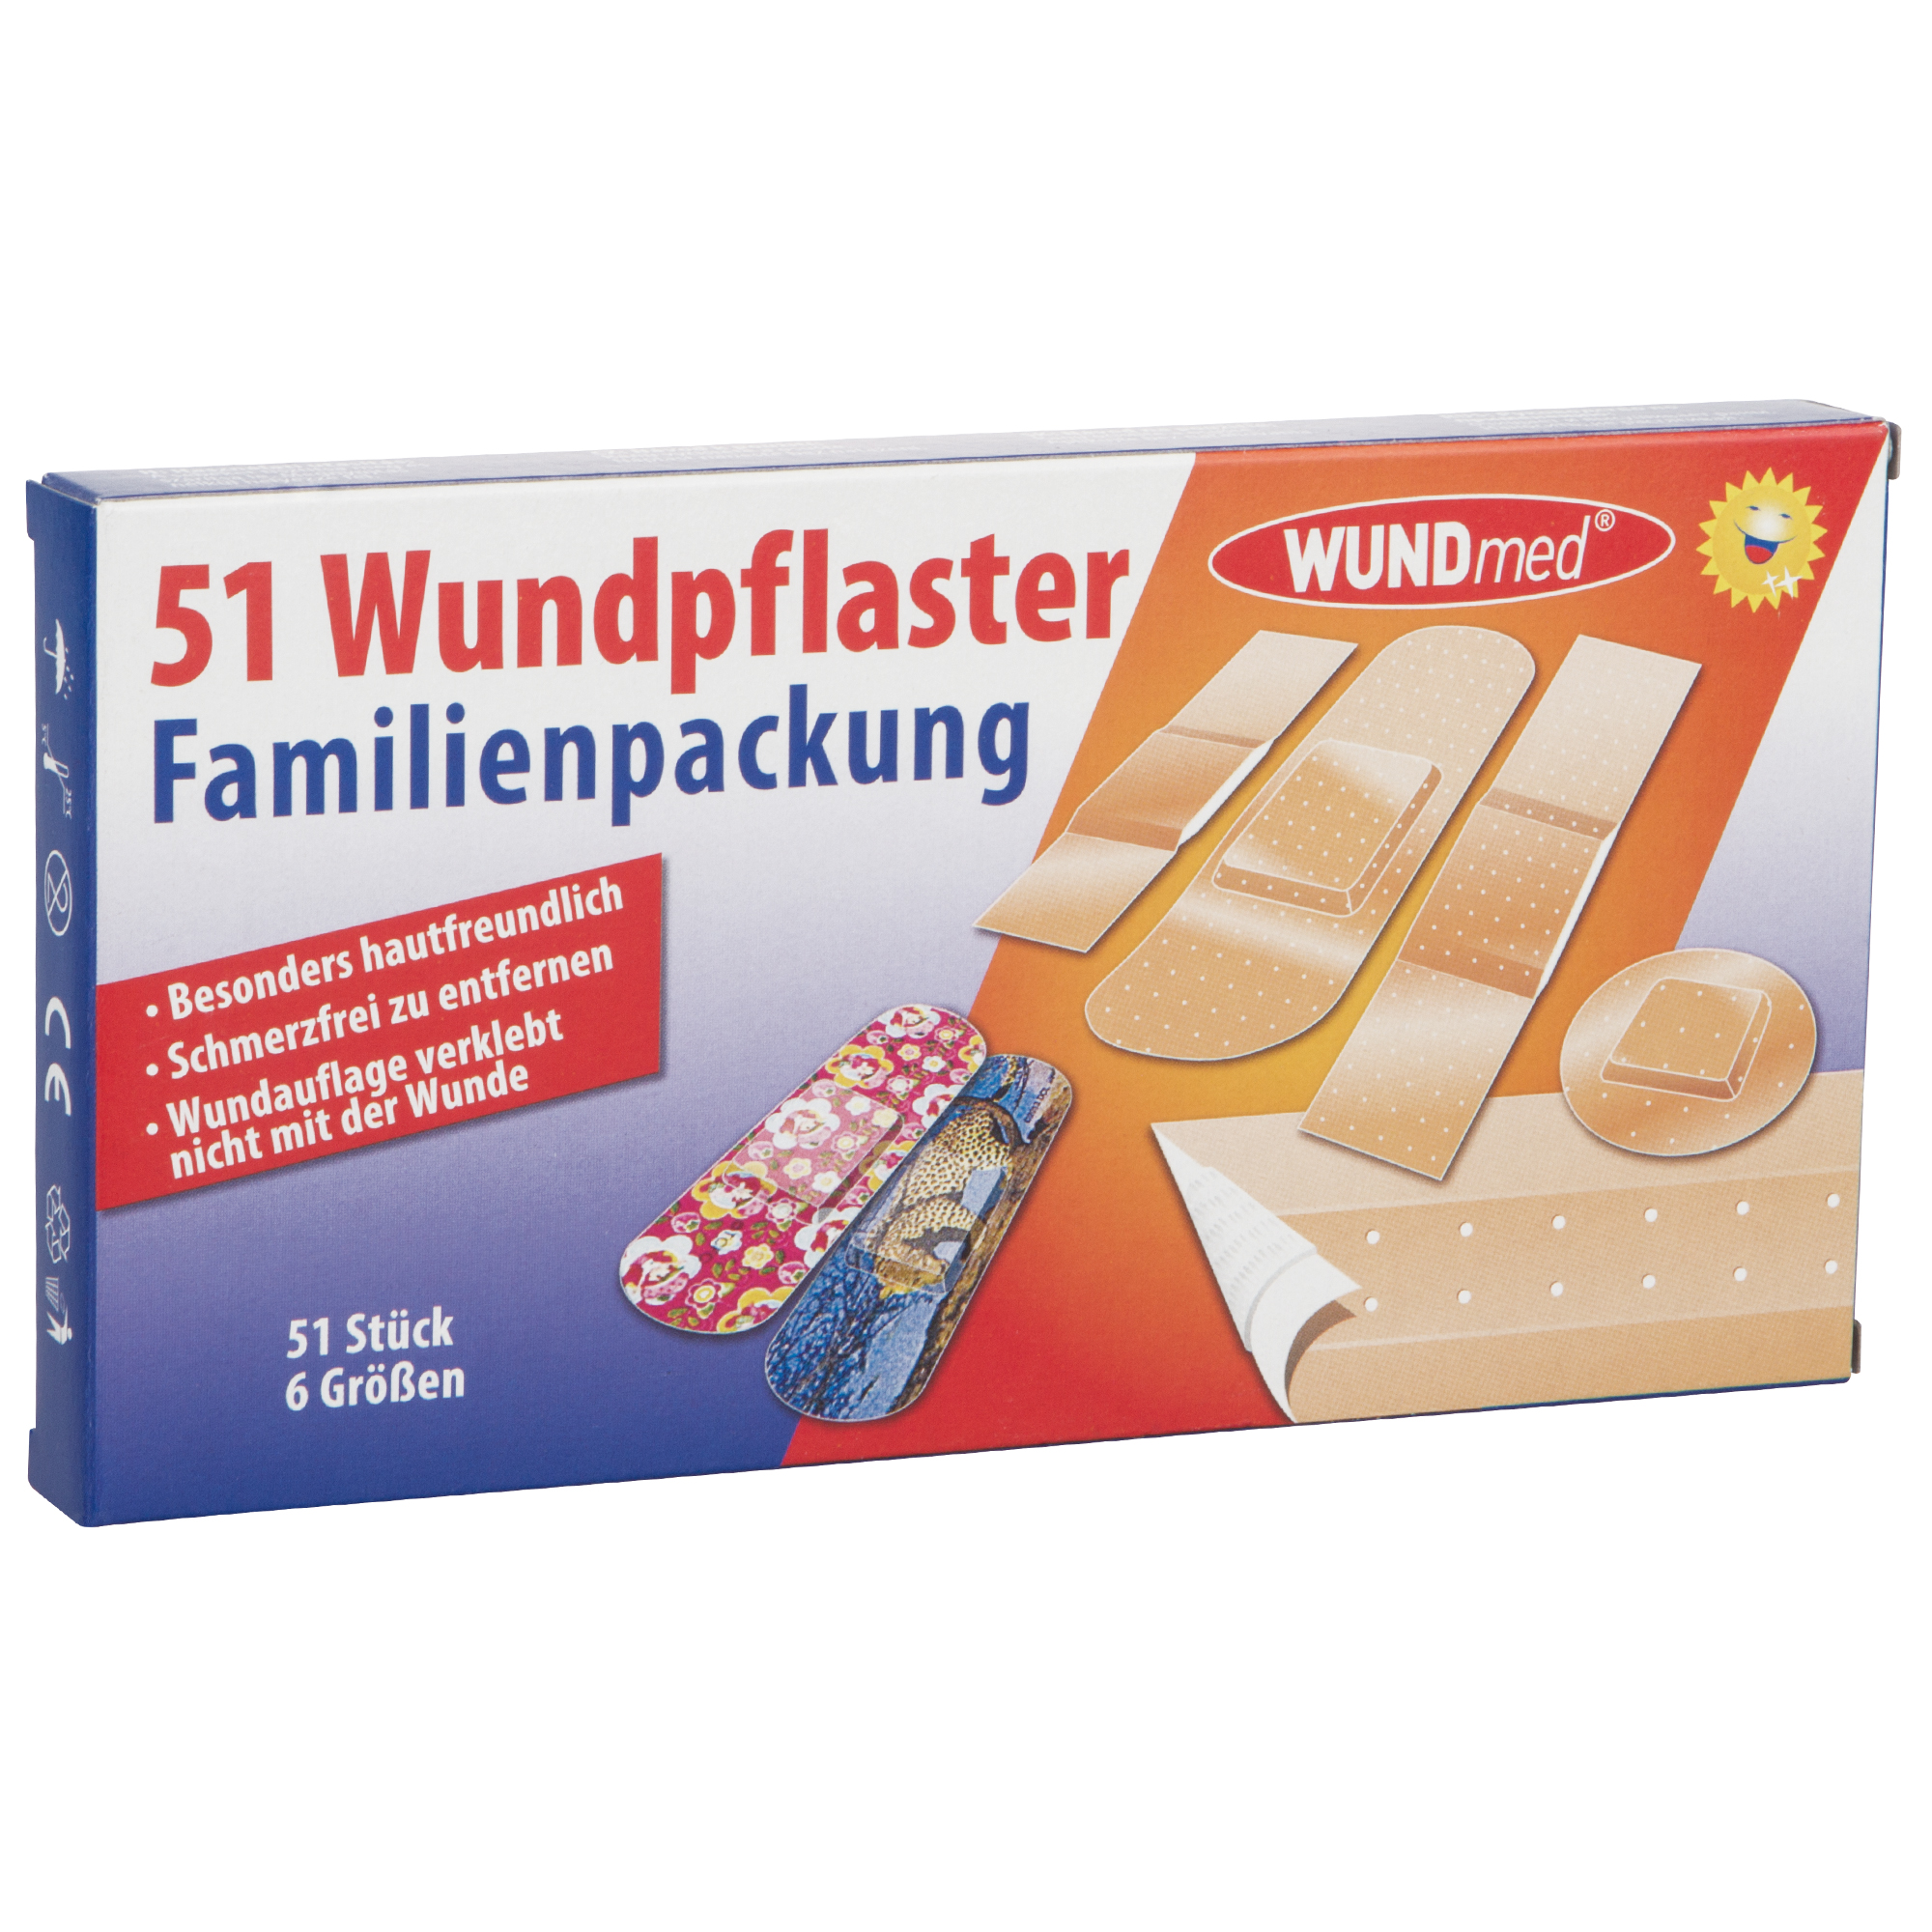 WUNDmed® Wundpflaster Familienpackung 51-teilig